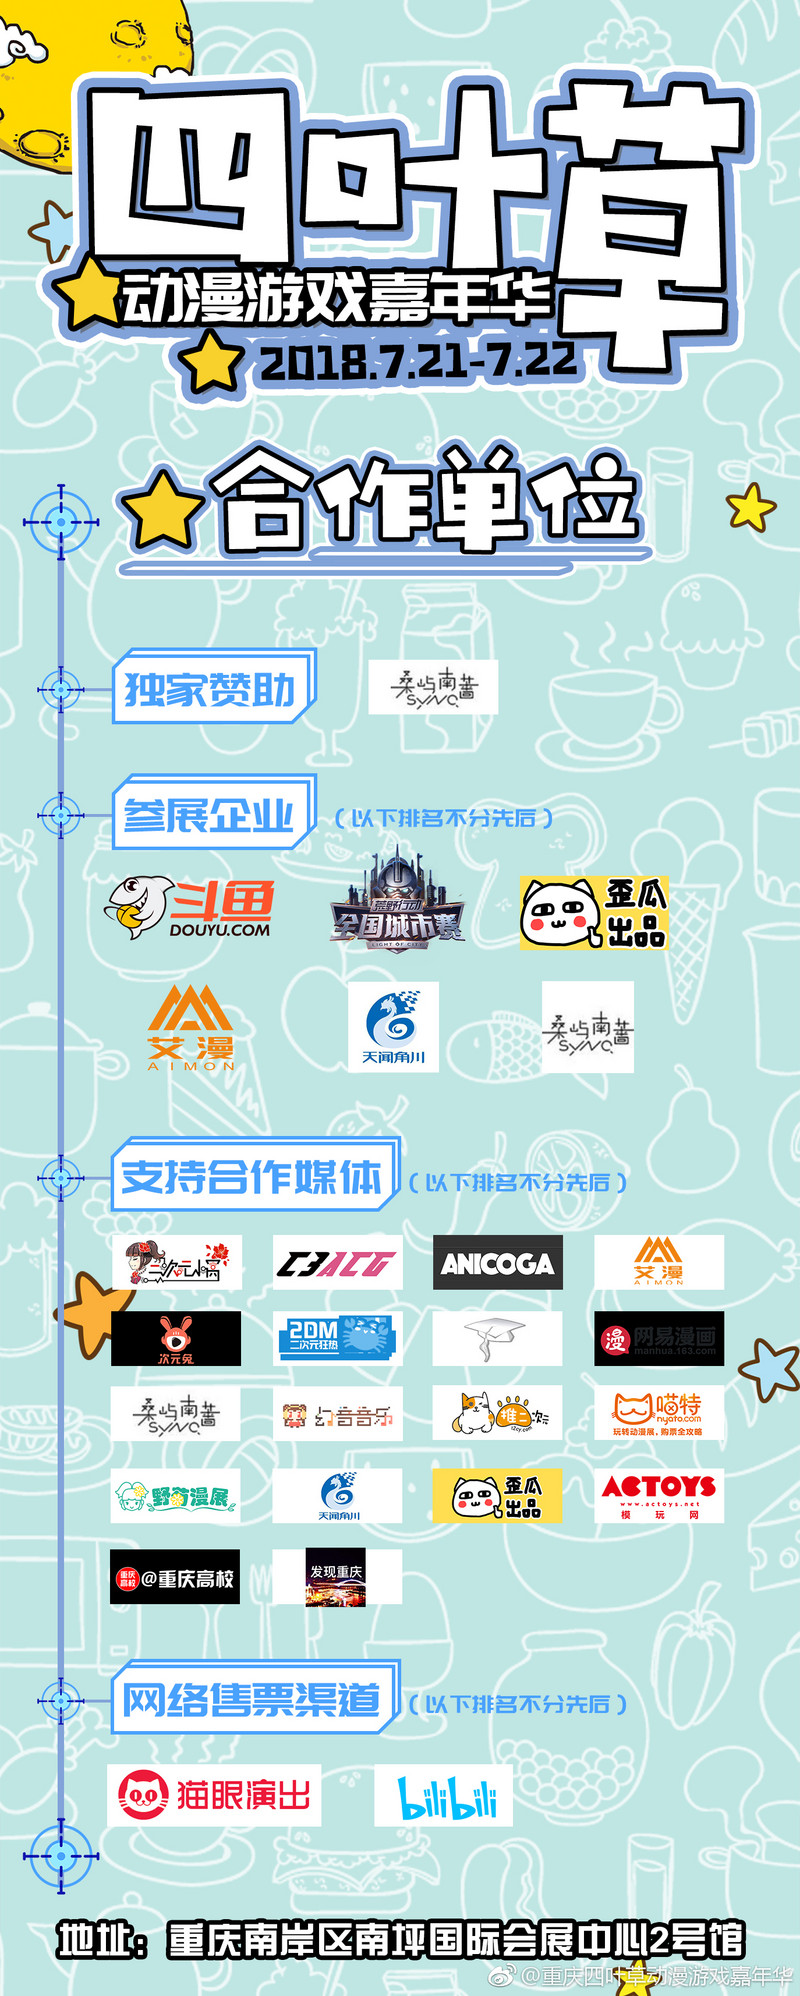 7月21-22日重庆四叶草动漫游戏嘉年华举办啦-C3动漫网